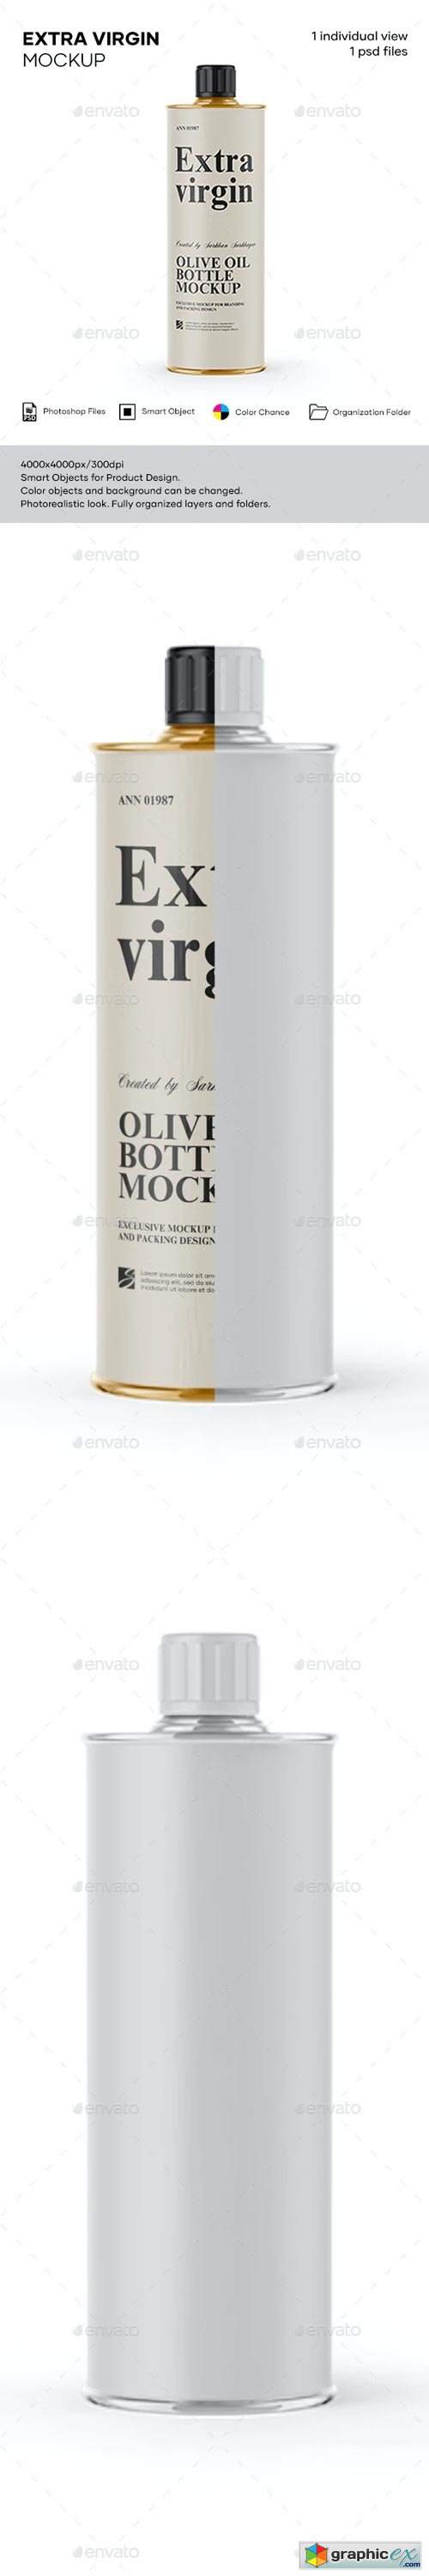 1L Olive Oil Metal Bottle Mockup 29509032